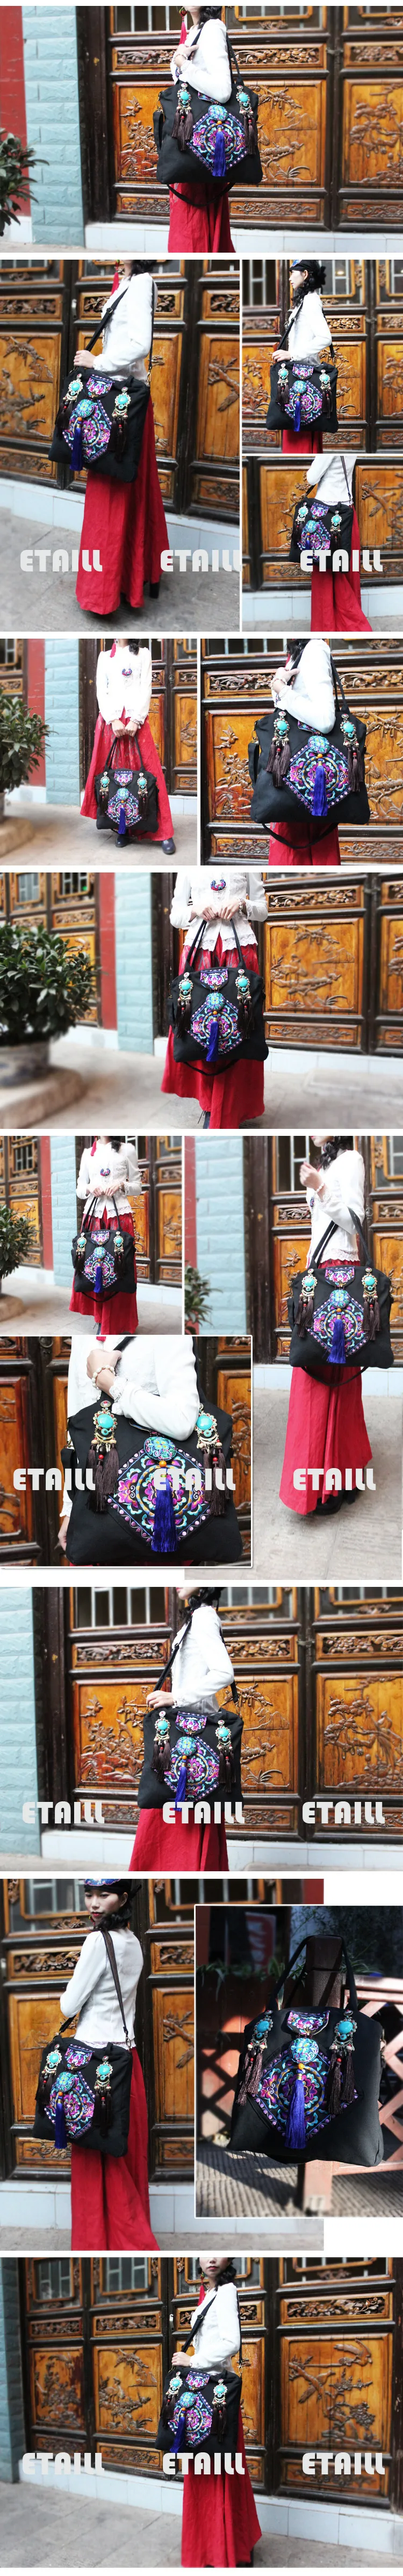 Китайский бренд дамы большой хмонг Boho цветок вышивка сумки Этническая сумка вышитые пайетками сумки мешок DOS Femme